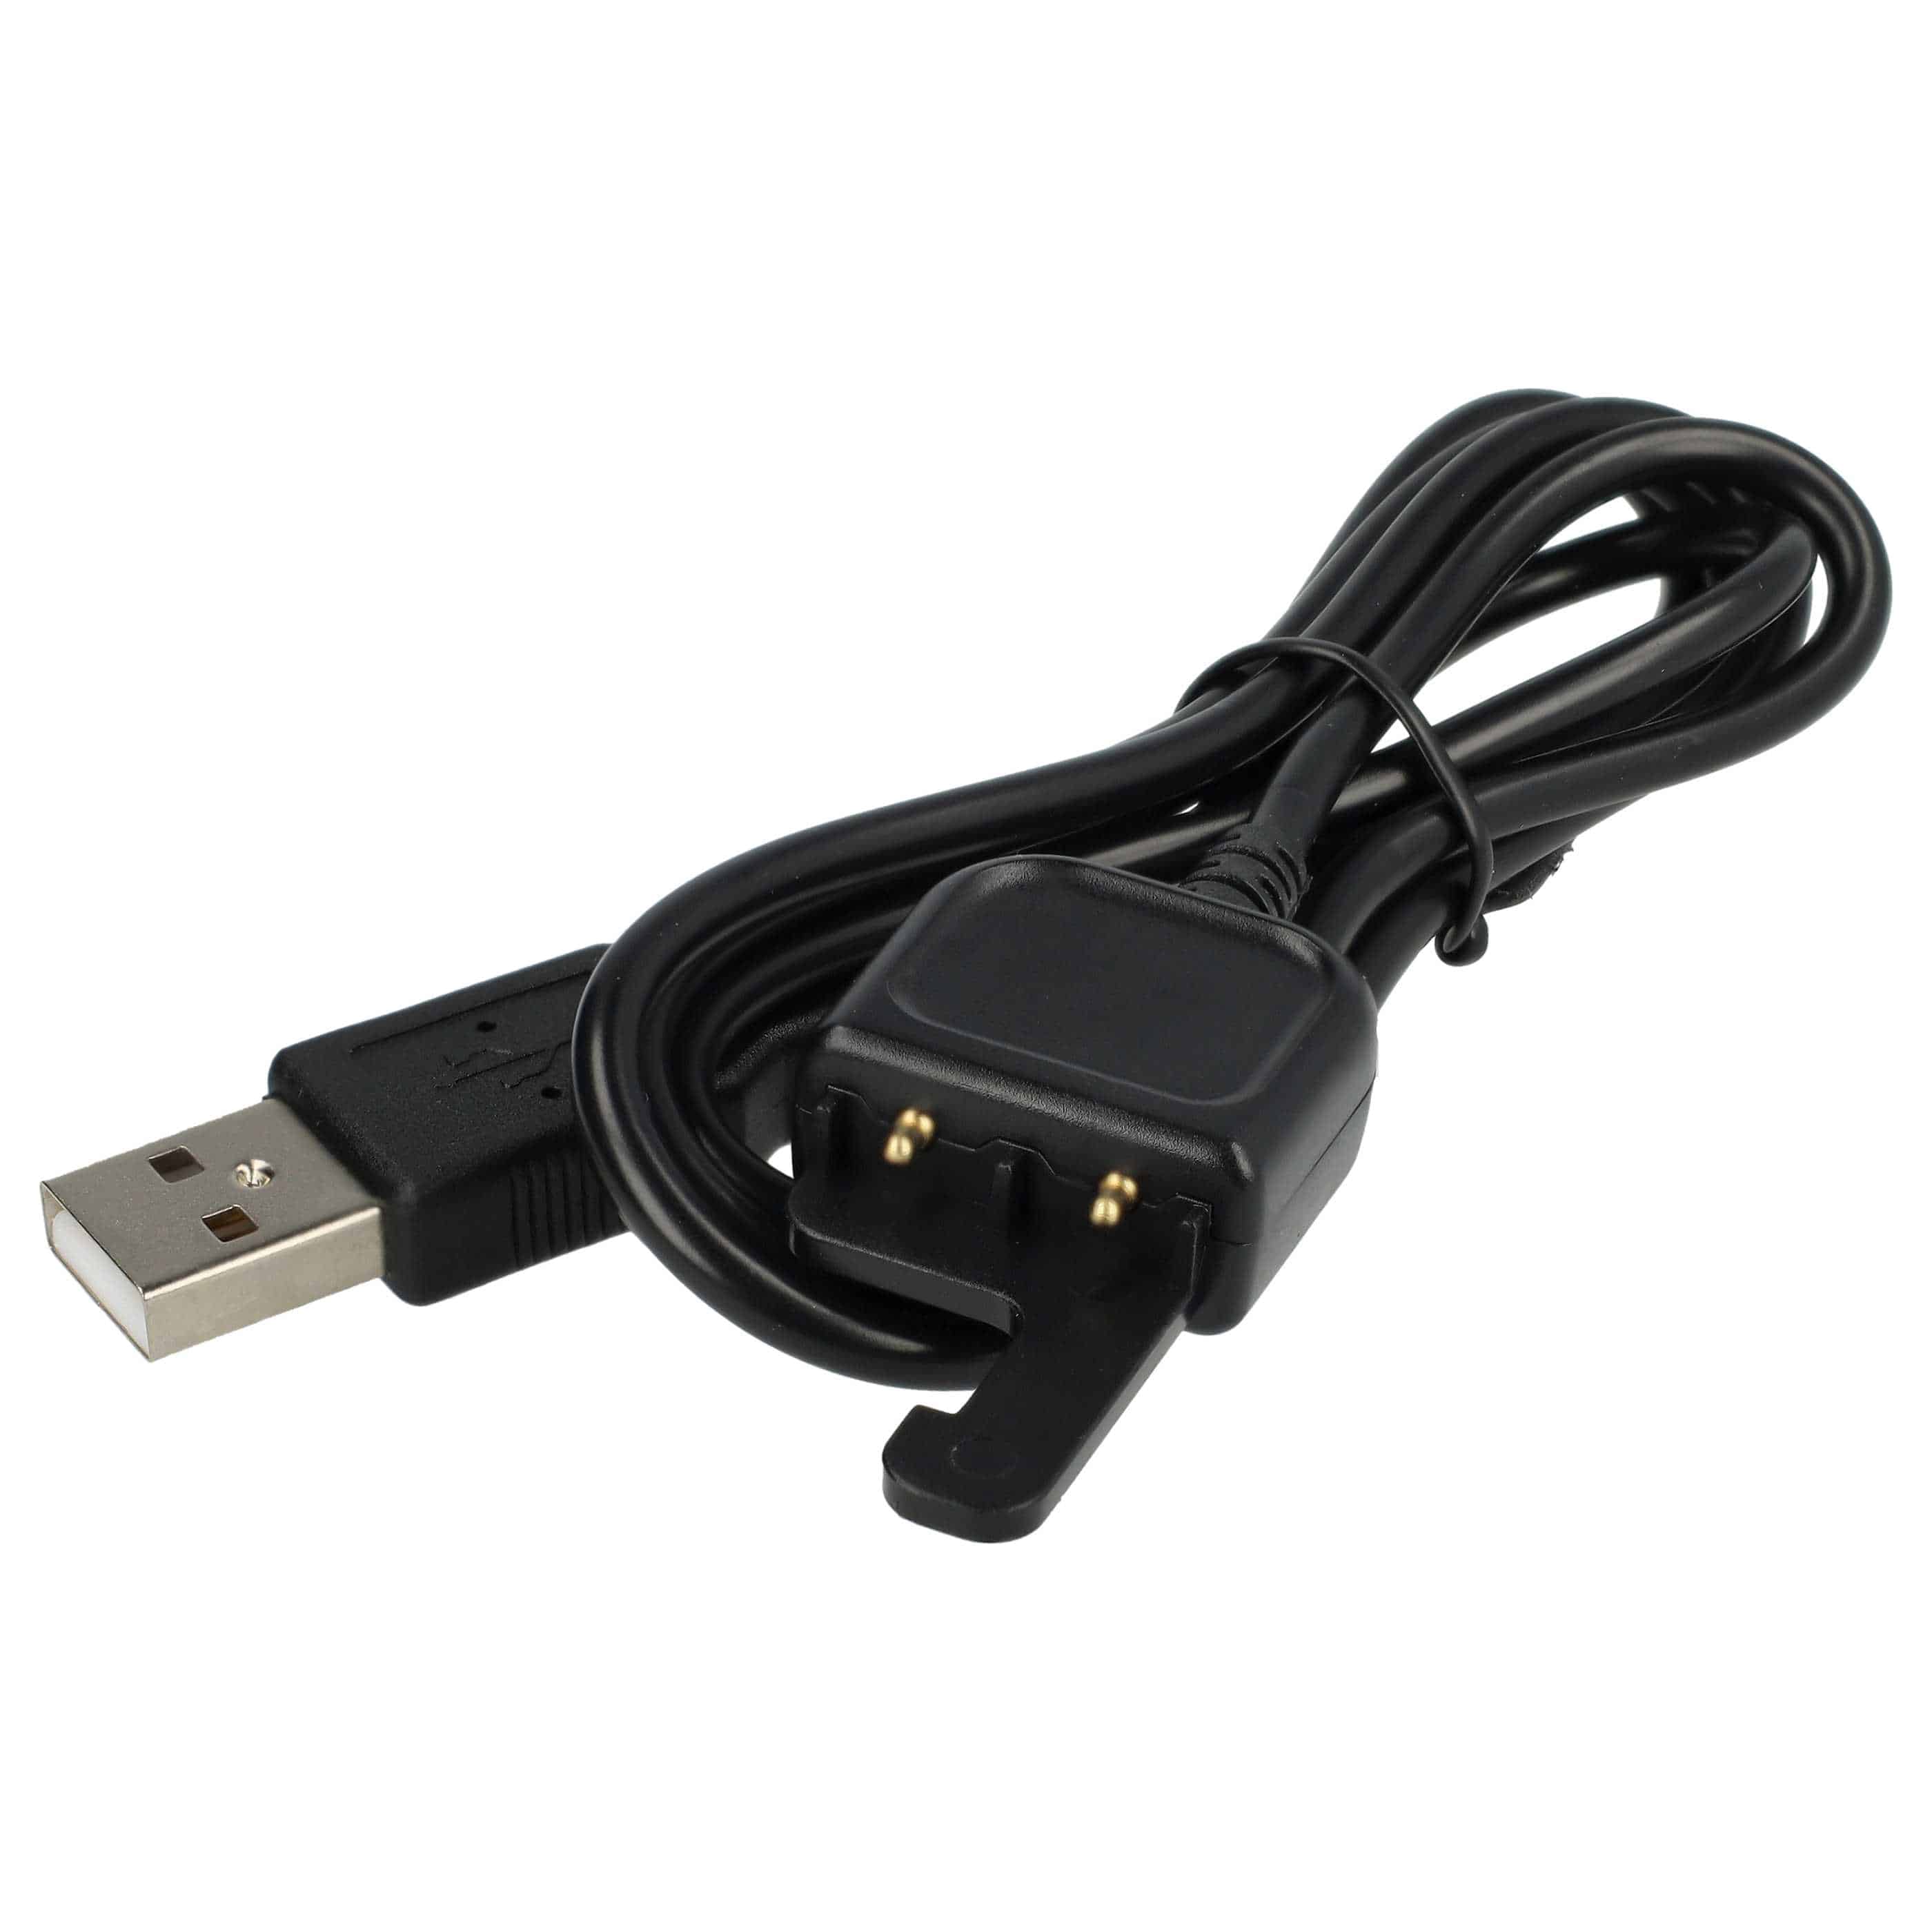  Cable USB reemplaza AWRCC-001 para mando a distancia GoPro - Cable de carga, 50 cm, negro